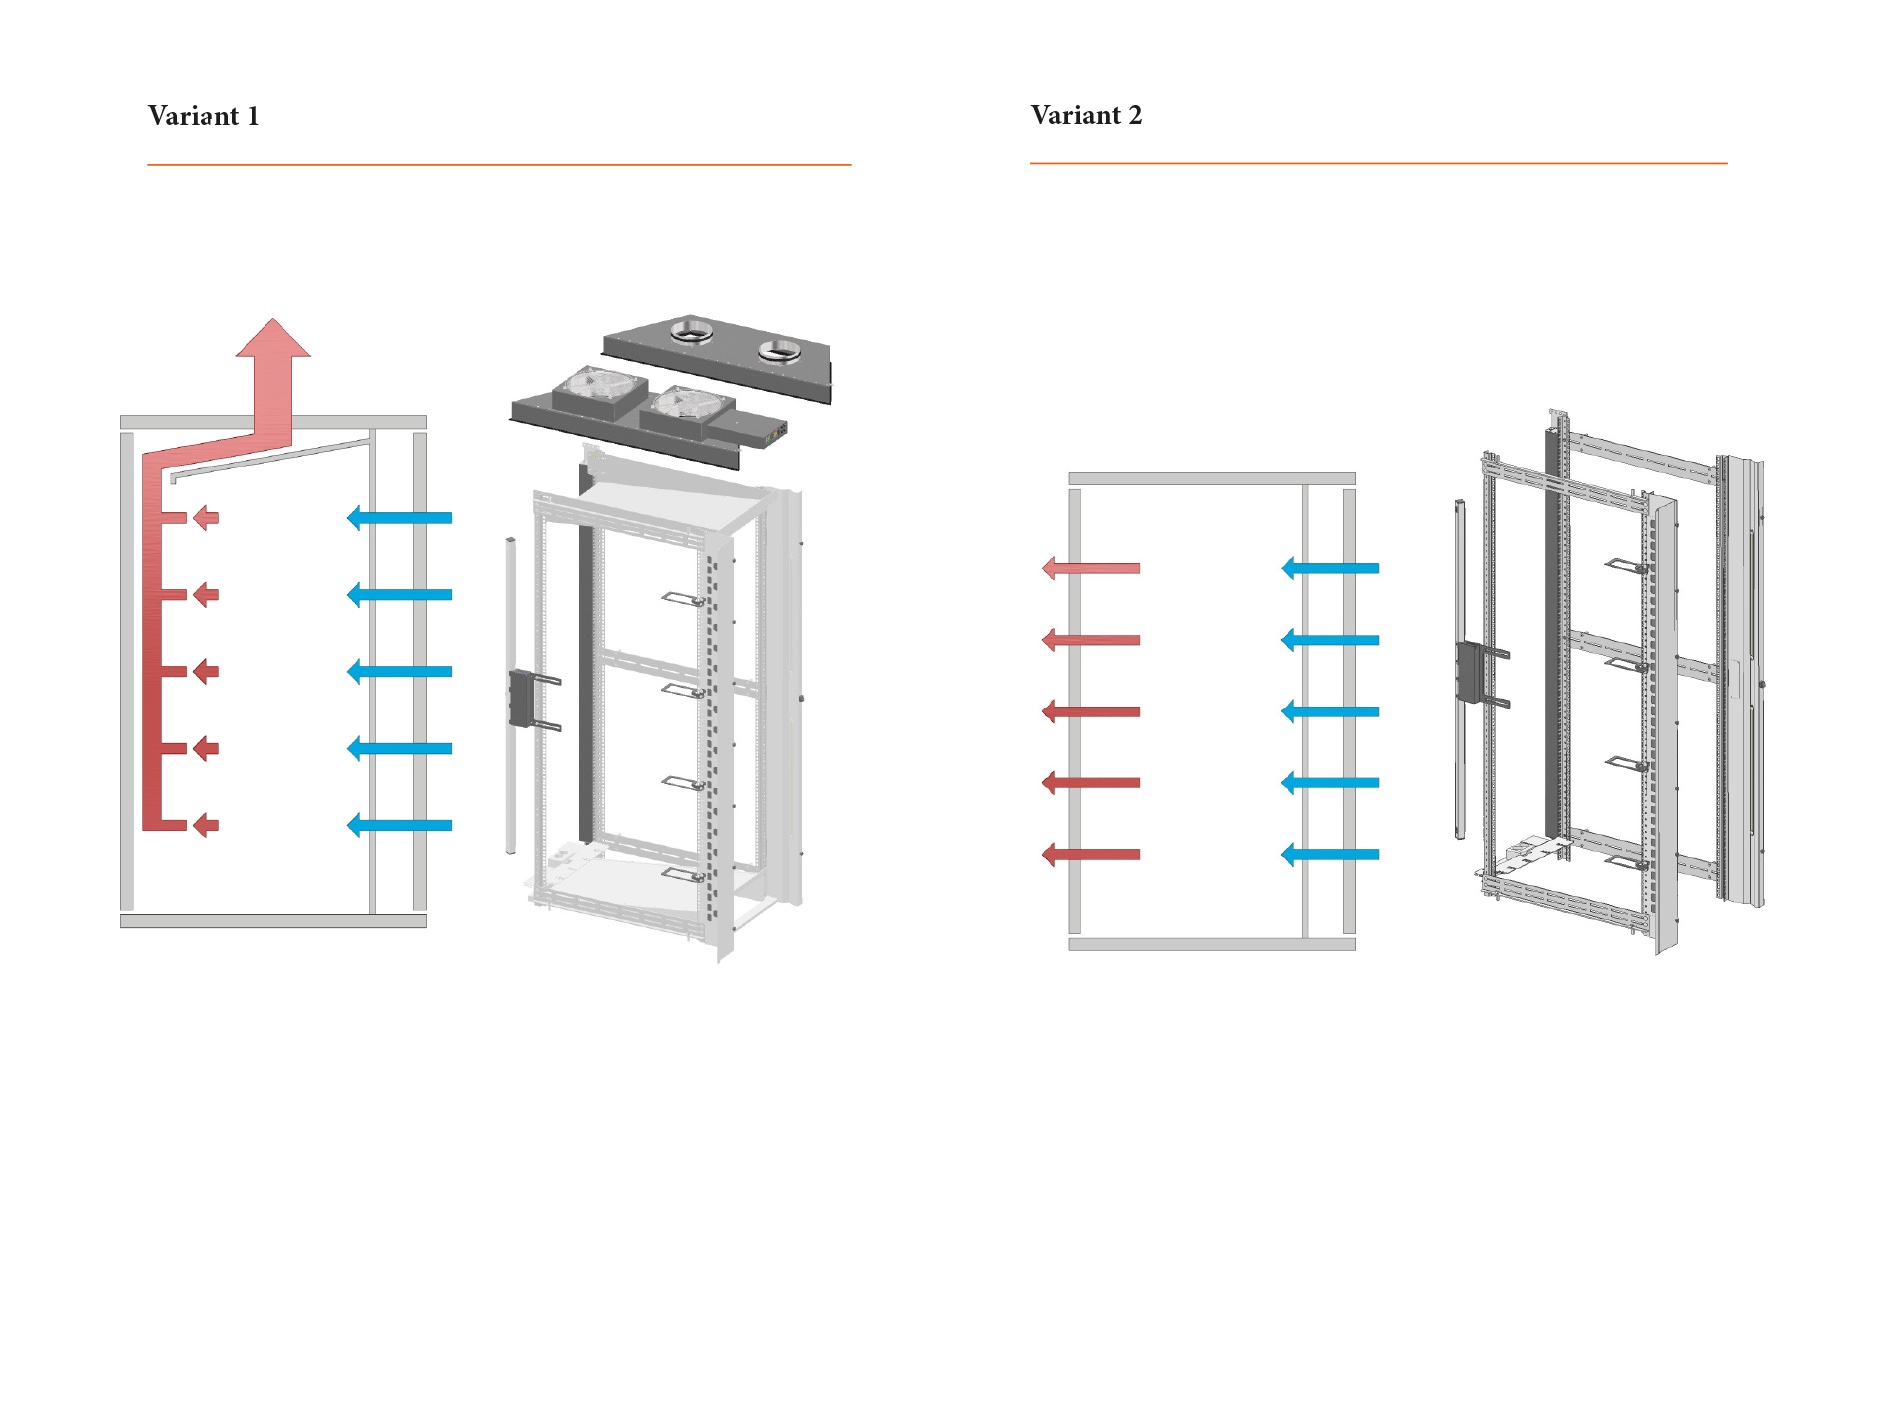 Variant 1: SN2/SN2SE
Luftintag genom främre dörr och utsug i skåpets tak.
Typ = APA: 		Typ = ALA: (finns ej i SE-utförande)
A (Aktiv) främre dörr	A (Aktiv) främre dörr
P (Passiv) bakre dörr	L (Låst) bakre dörr
A (Aktiv) kropp		A (Aktiv) kropp
SN2AO800/1200 (utsugsstos) placeras högst upp 
inne i skåpet. SN2RFU800/1200 (fläktpaket) alternativt 
SN2RAU800/1200 (stosanslutning) som ansluts till 
fastighetens rörsystem placeras ovanpå skåpet. 
Komplettera med belysning och kabelintag vid sidan 
av stativet för att säkerställa att den kalla luften passerar genom utrustningen. 
SN2LED1600/2000 (främre belysning).
SN2ICI1600/2000 (inre kabelintag).
SN2LED2 (bakre belysning).


Variant 2:
Luftintag genom främre dörr och utluft genom bakre dörr.
Typ = AAP: 
A (Aktiv) främre dörr
A (Aktiv) bakre dörr
P (Passiv) kropp
Servrarnas egna fläktar drar luften genom utrustningen, 
alternativt komplettera med SN2DFU, dörrfläktar, för utökad luftgenomströmning. 
Komplettera med belysning och kabelintag vid sidan av 
stativet för att säkerställa att den kalla luften passerar 
genom utrustningen. 
SN2LED1600/2000 (främre belysning).
SN2ICI1600/2000 (inre kabelintag).
SN2LED2 (bakre belysning).